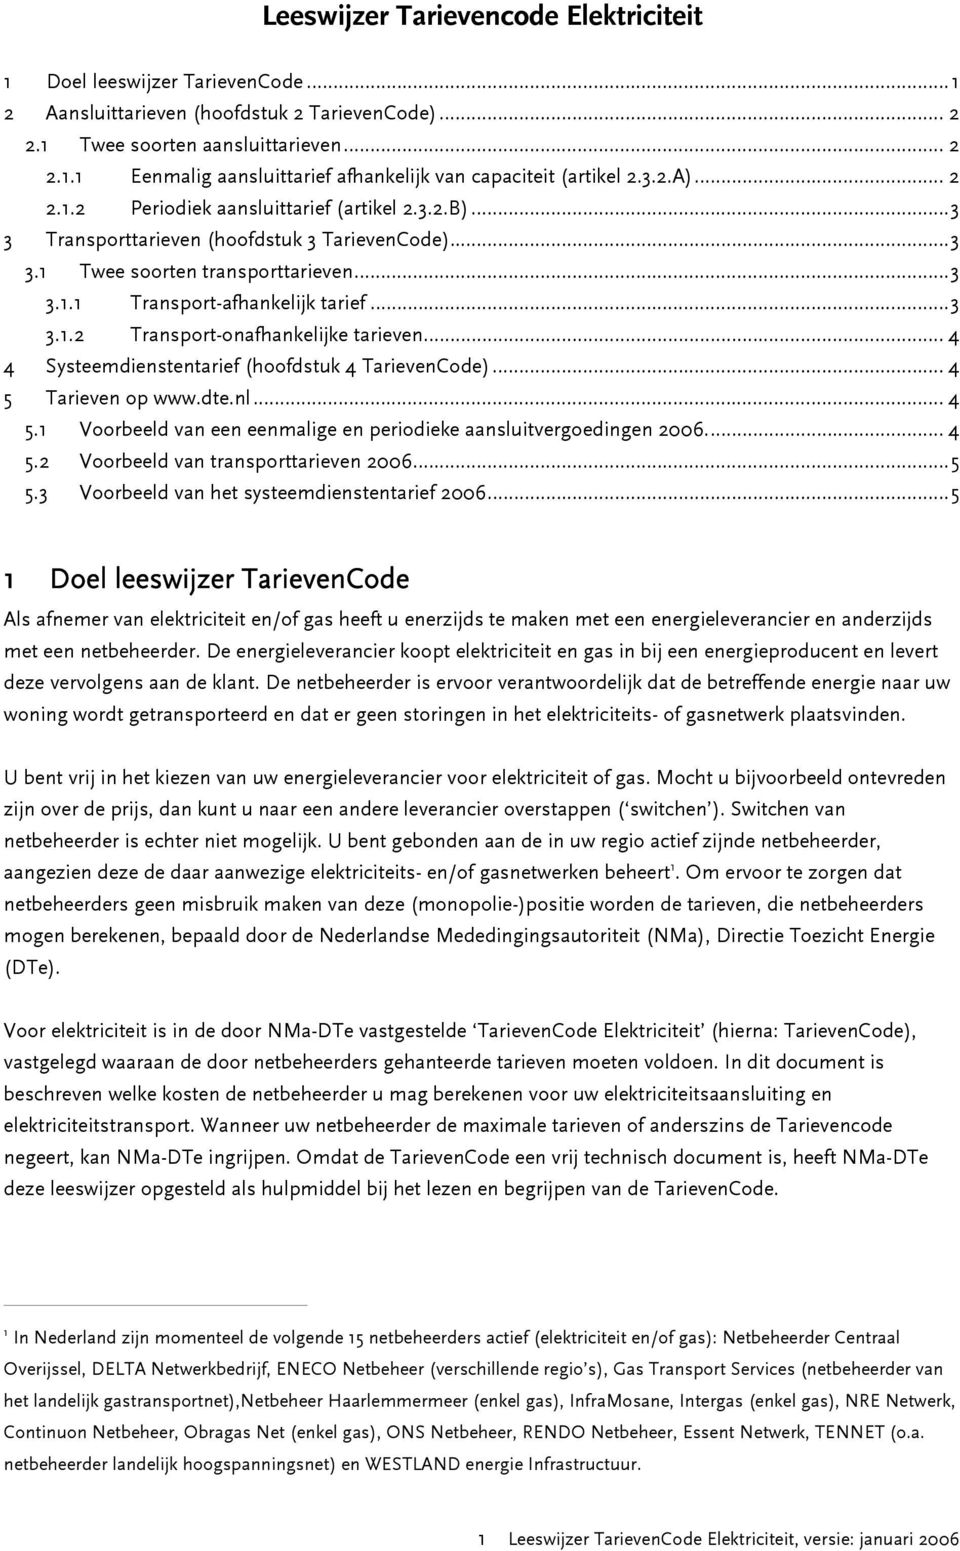 .. 4 4 Systeemdienstentarief (hoofdstuk 4 TarievenCode)... 4 5 Tarieven op www.dte.nl... 4 5. Voorbeeld van een eenmalige en periodieke aansluitvergoedingen 2006... 4 5.2 Voorbeeld van transporttarieven 2006.